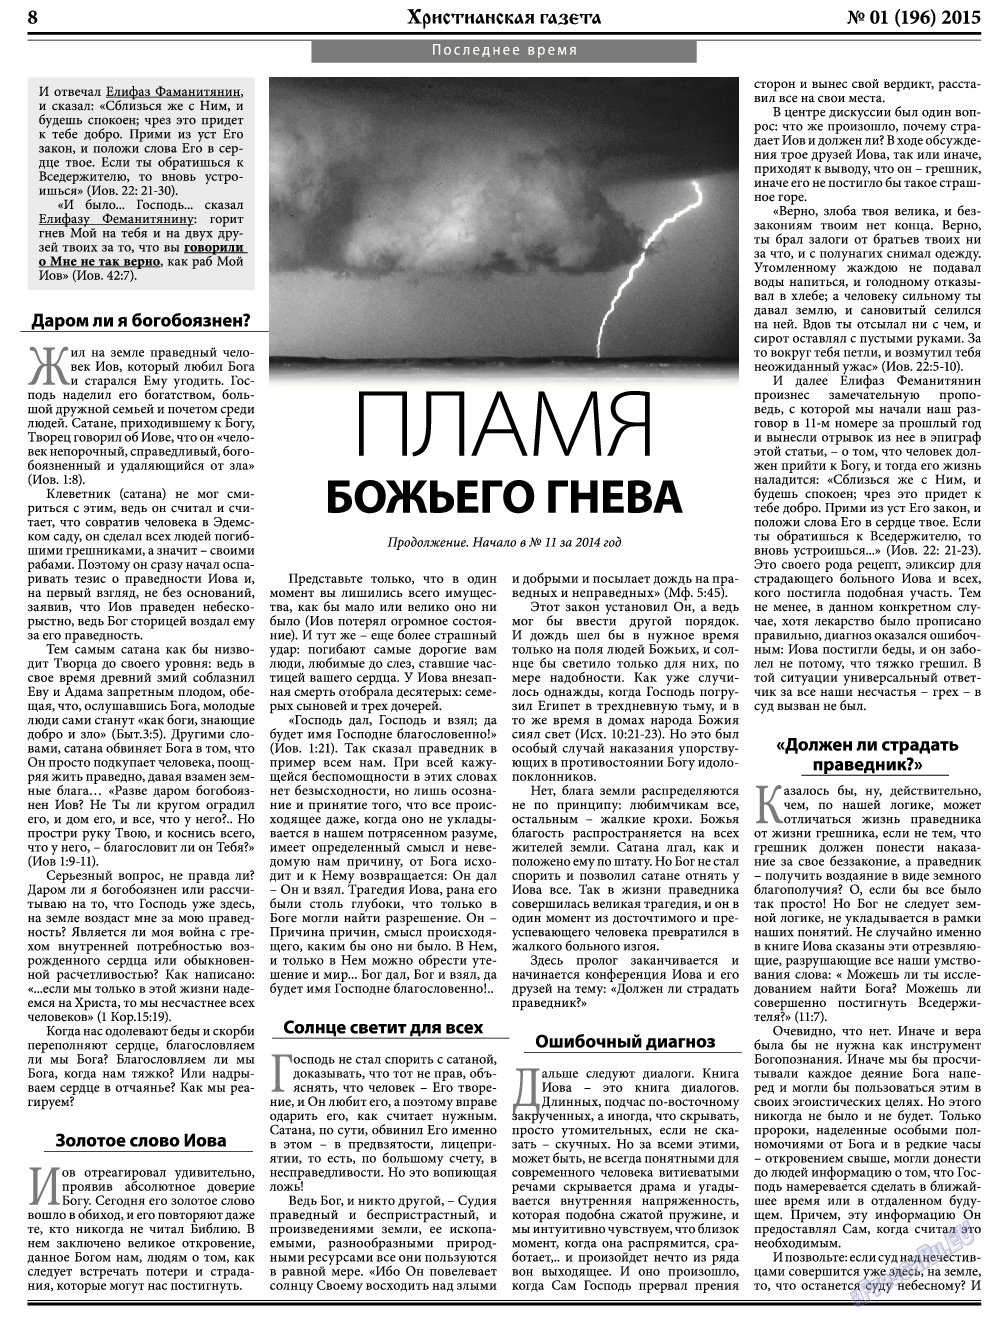 Христианская газета, газета. 2015 №1 стр.8